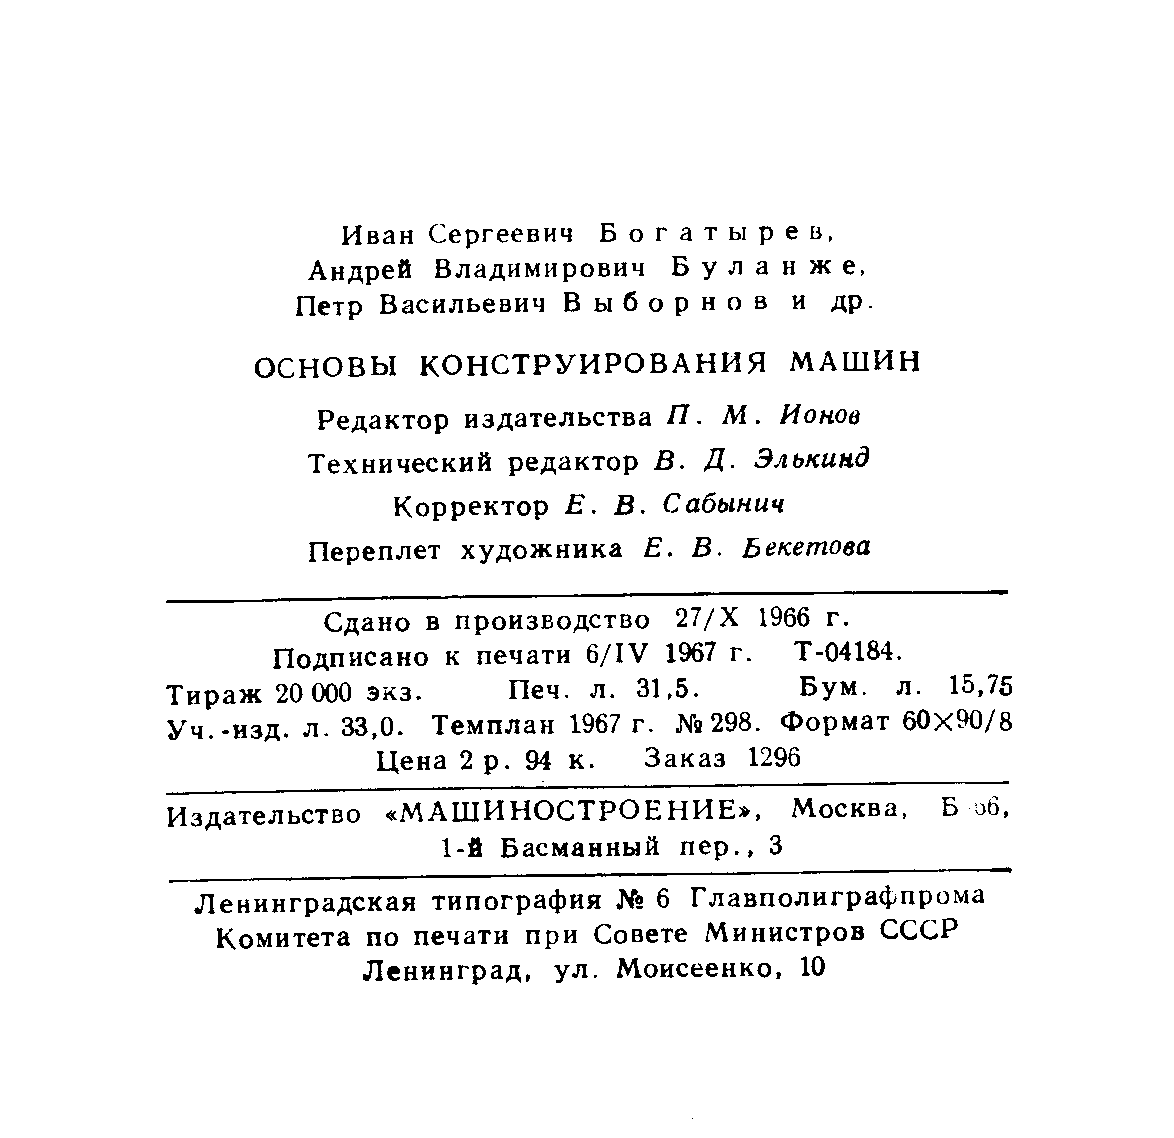 Конструирование армированного литья (лист 226).
